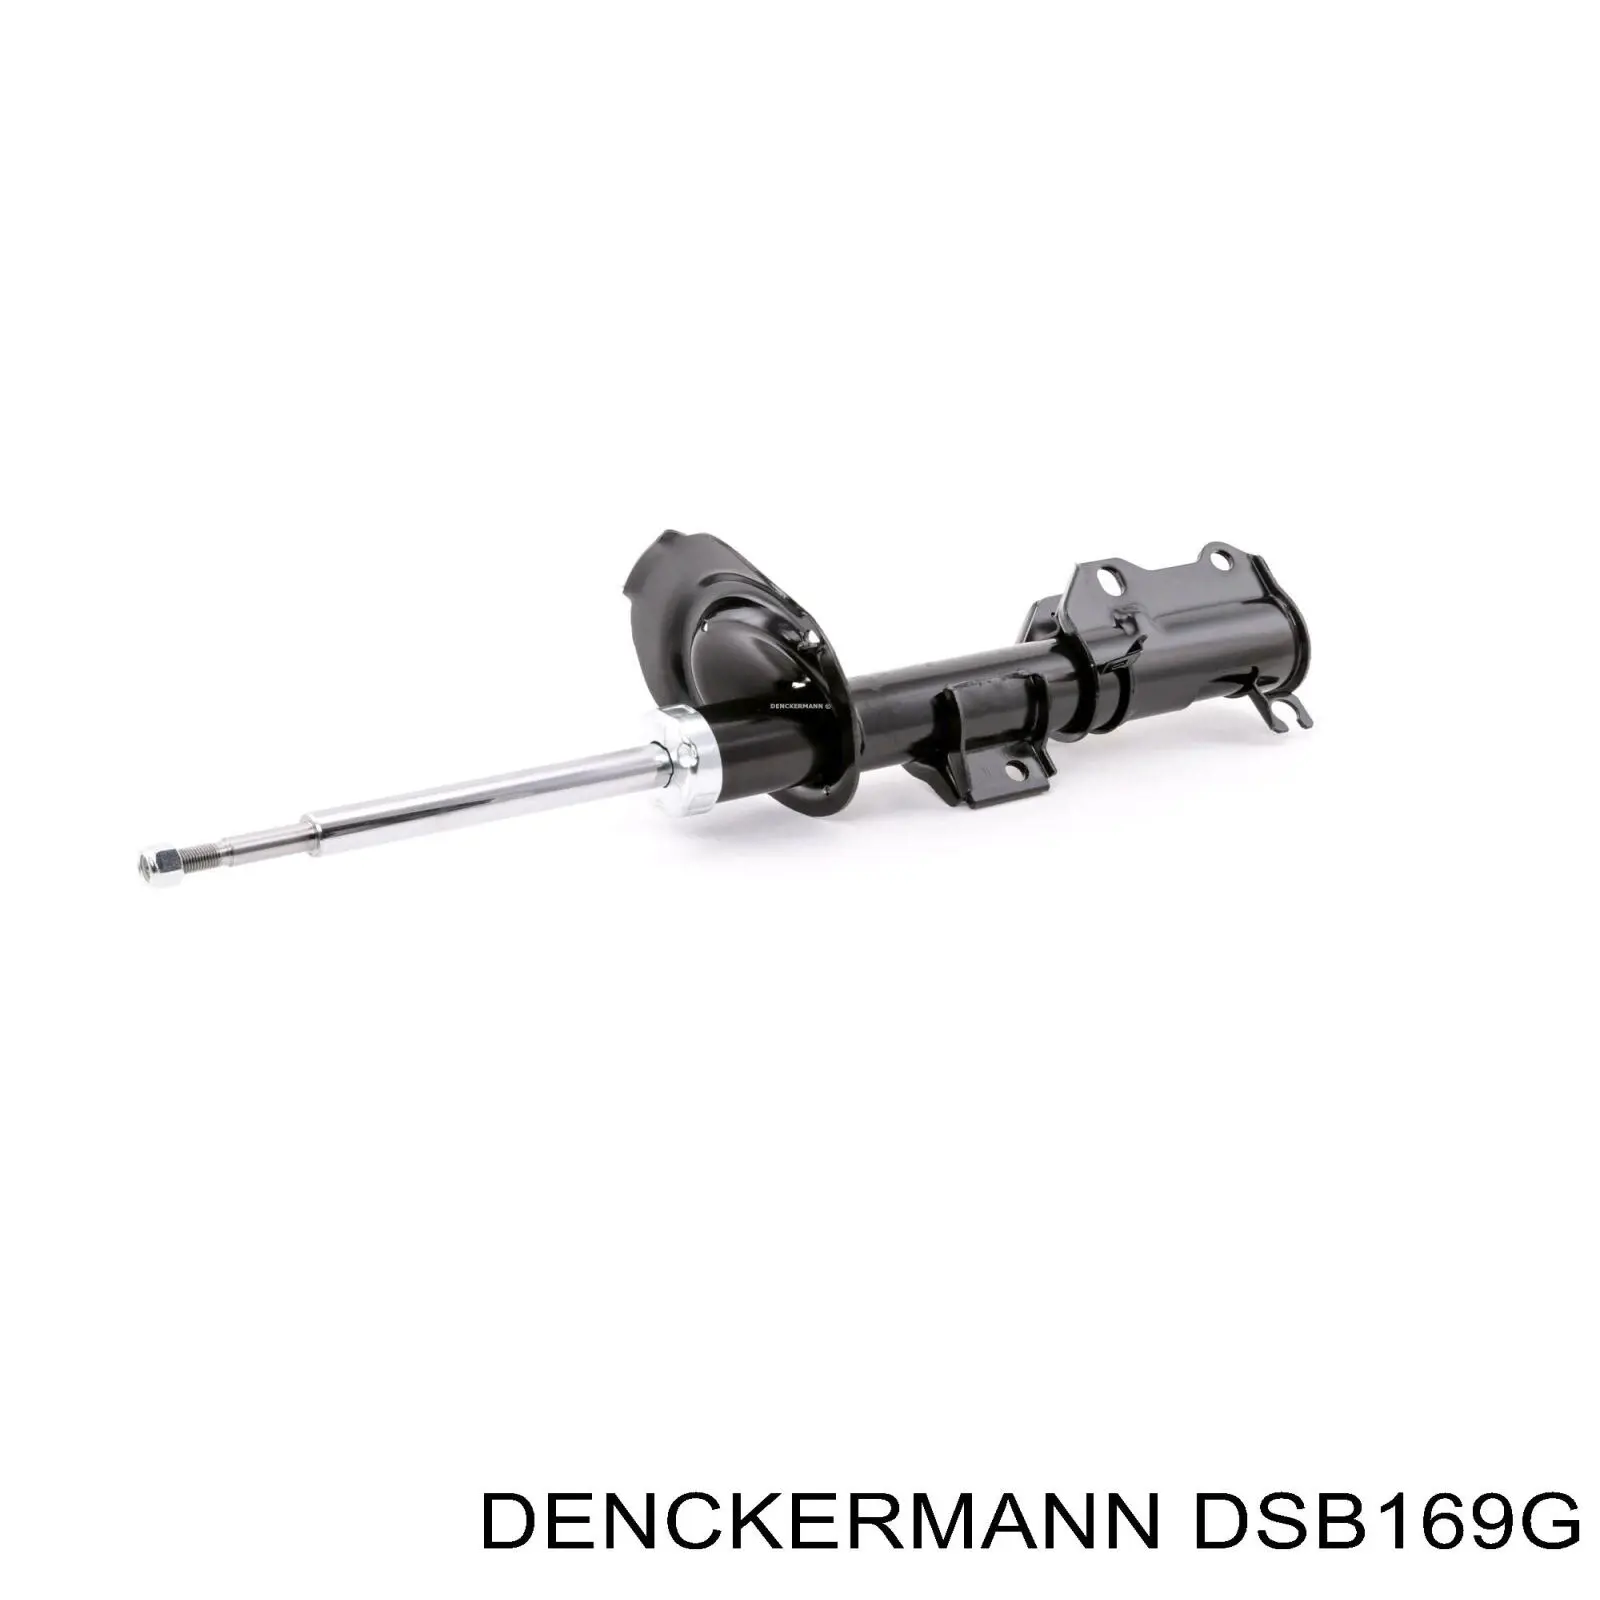 DSB169G Denckermann amortiguador delantero